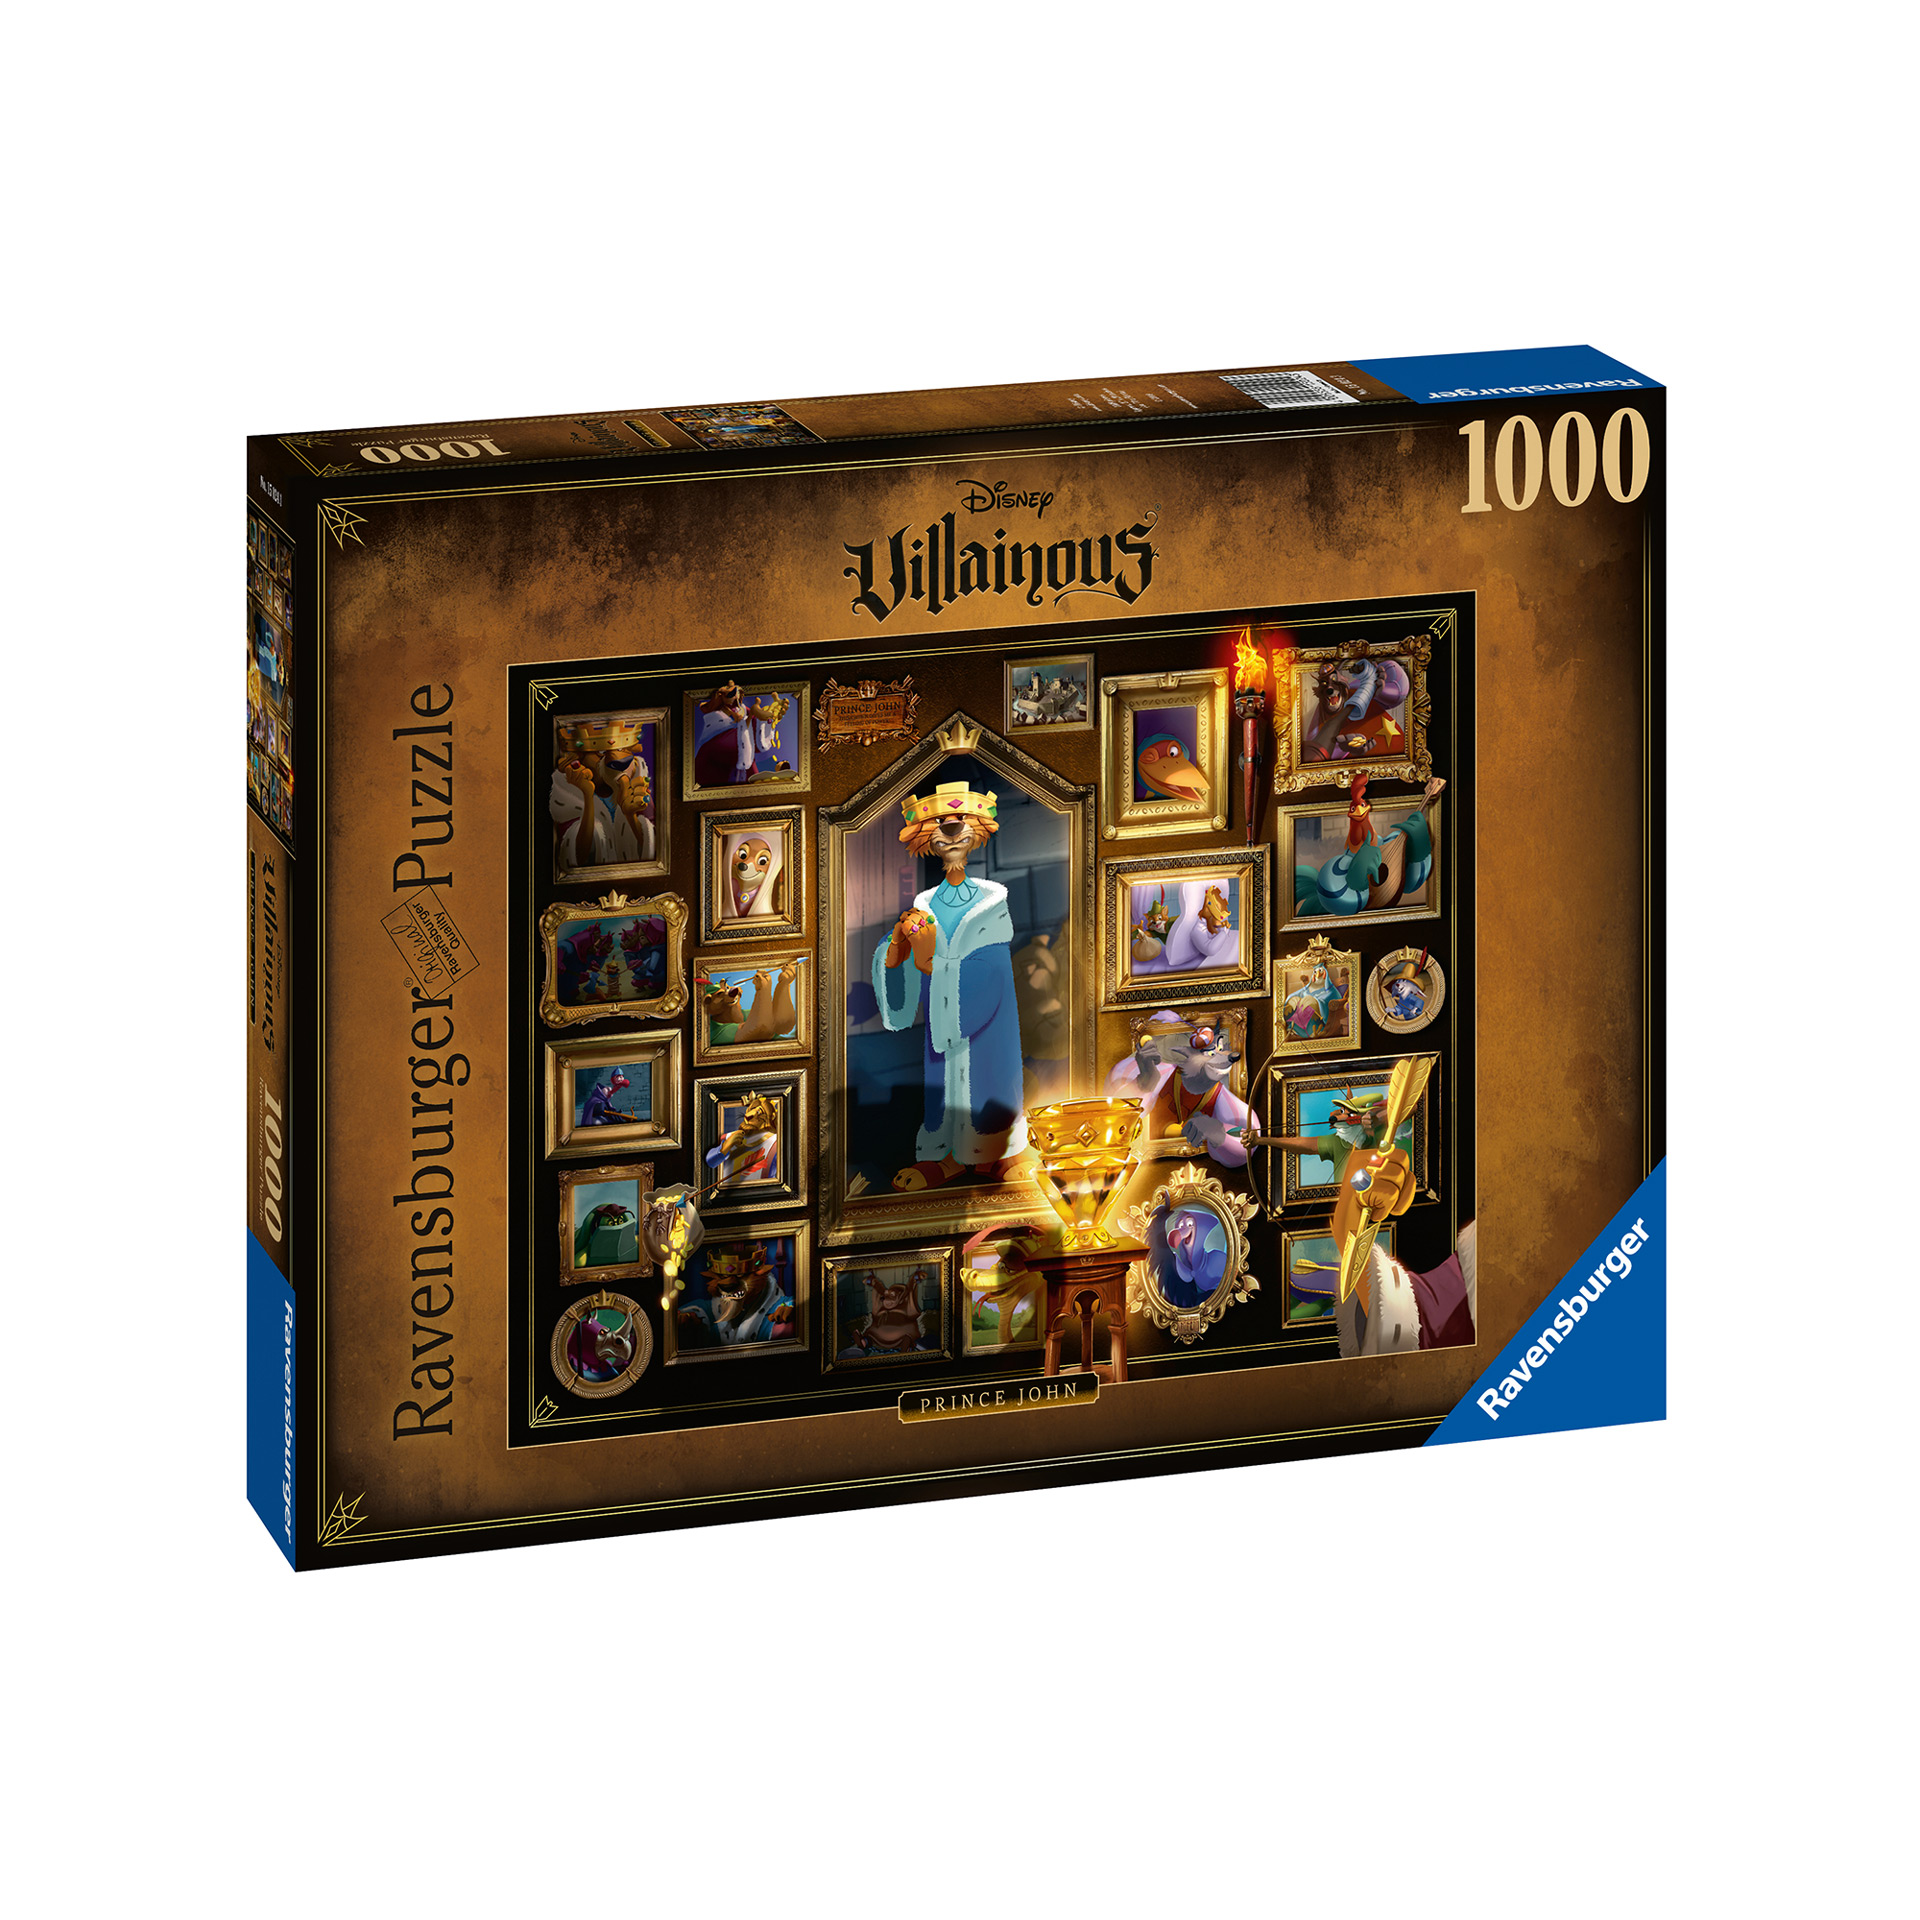 Ravensburger Puzzle 1000 pezzi - Villainous: King John, , large